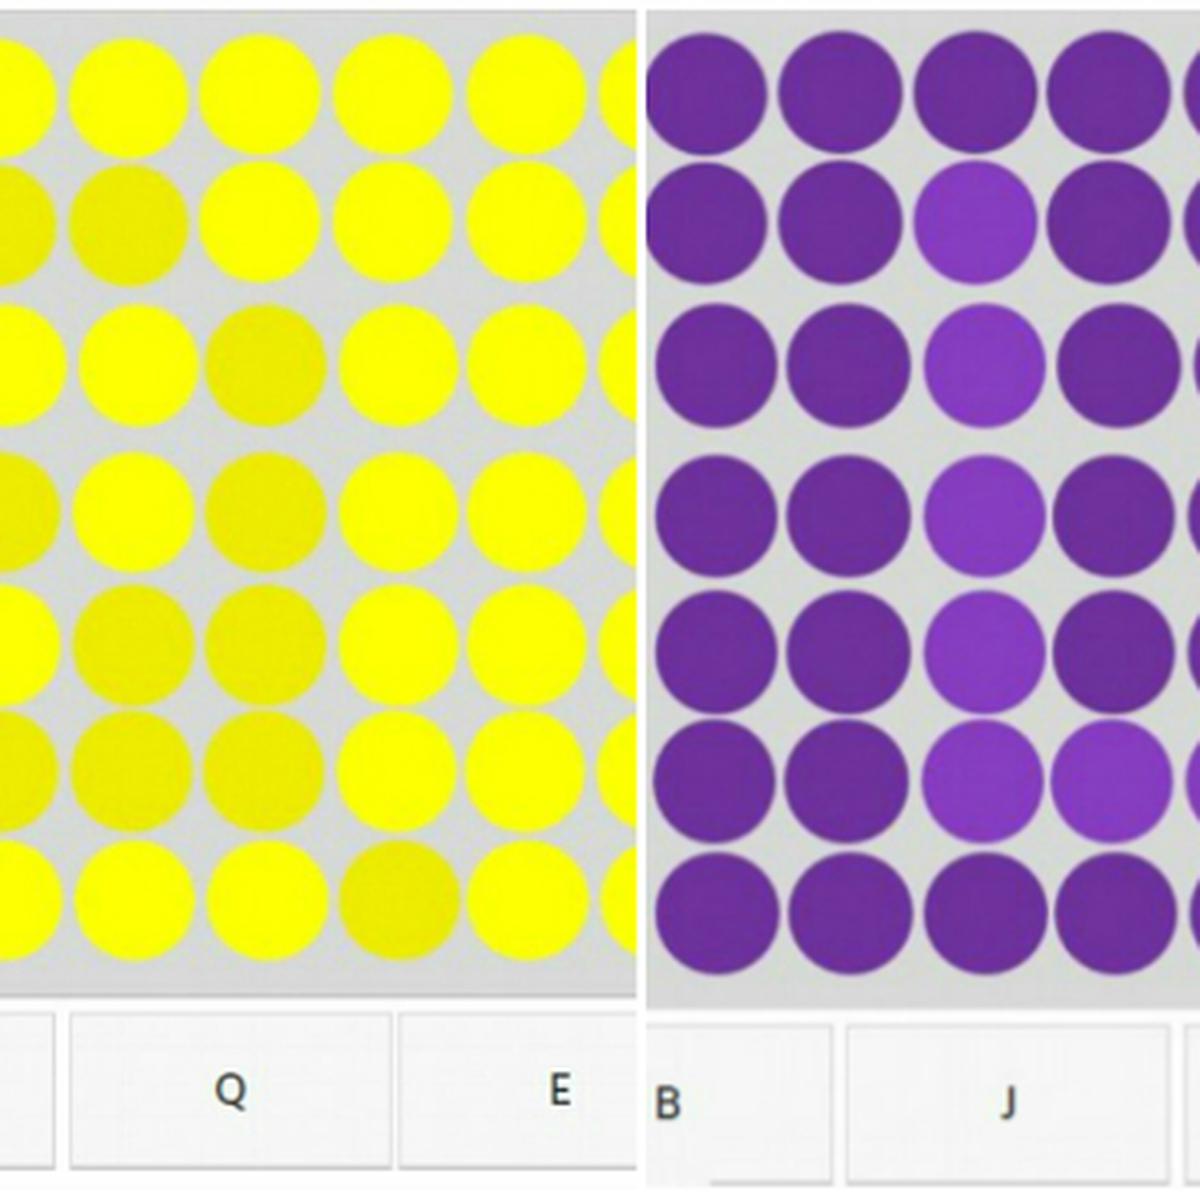 Pada titik pola banyak ke-7 pola menunjukkan x pada huruf x diatas adalah gambar titik huruf banyak pada Q. Matematika